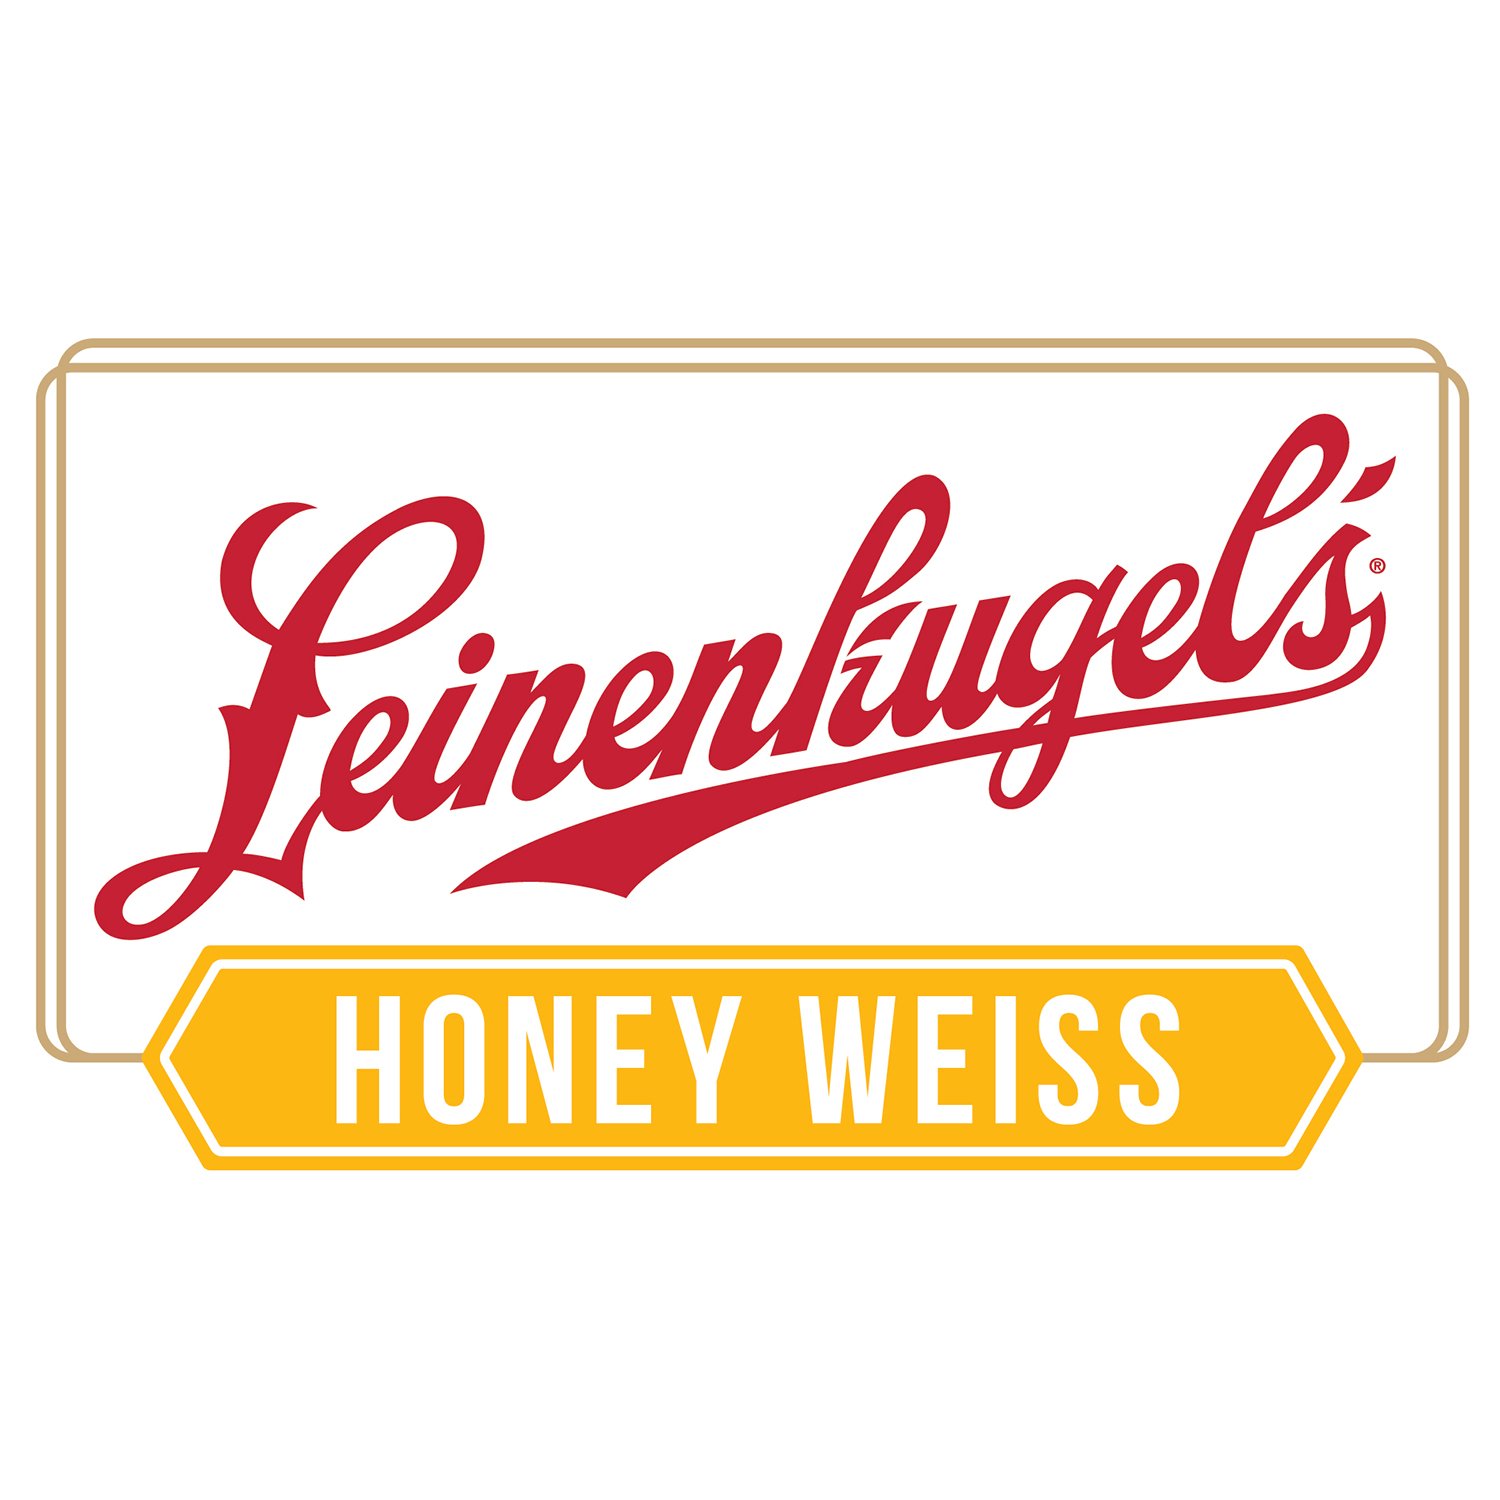 Honey Weiss